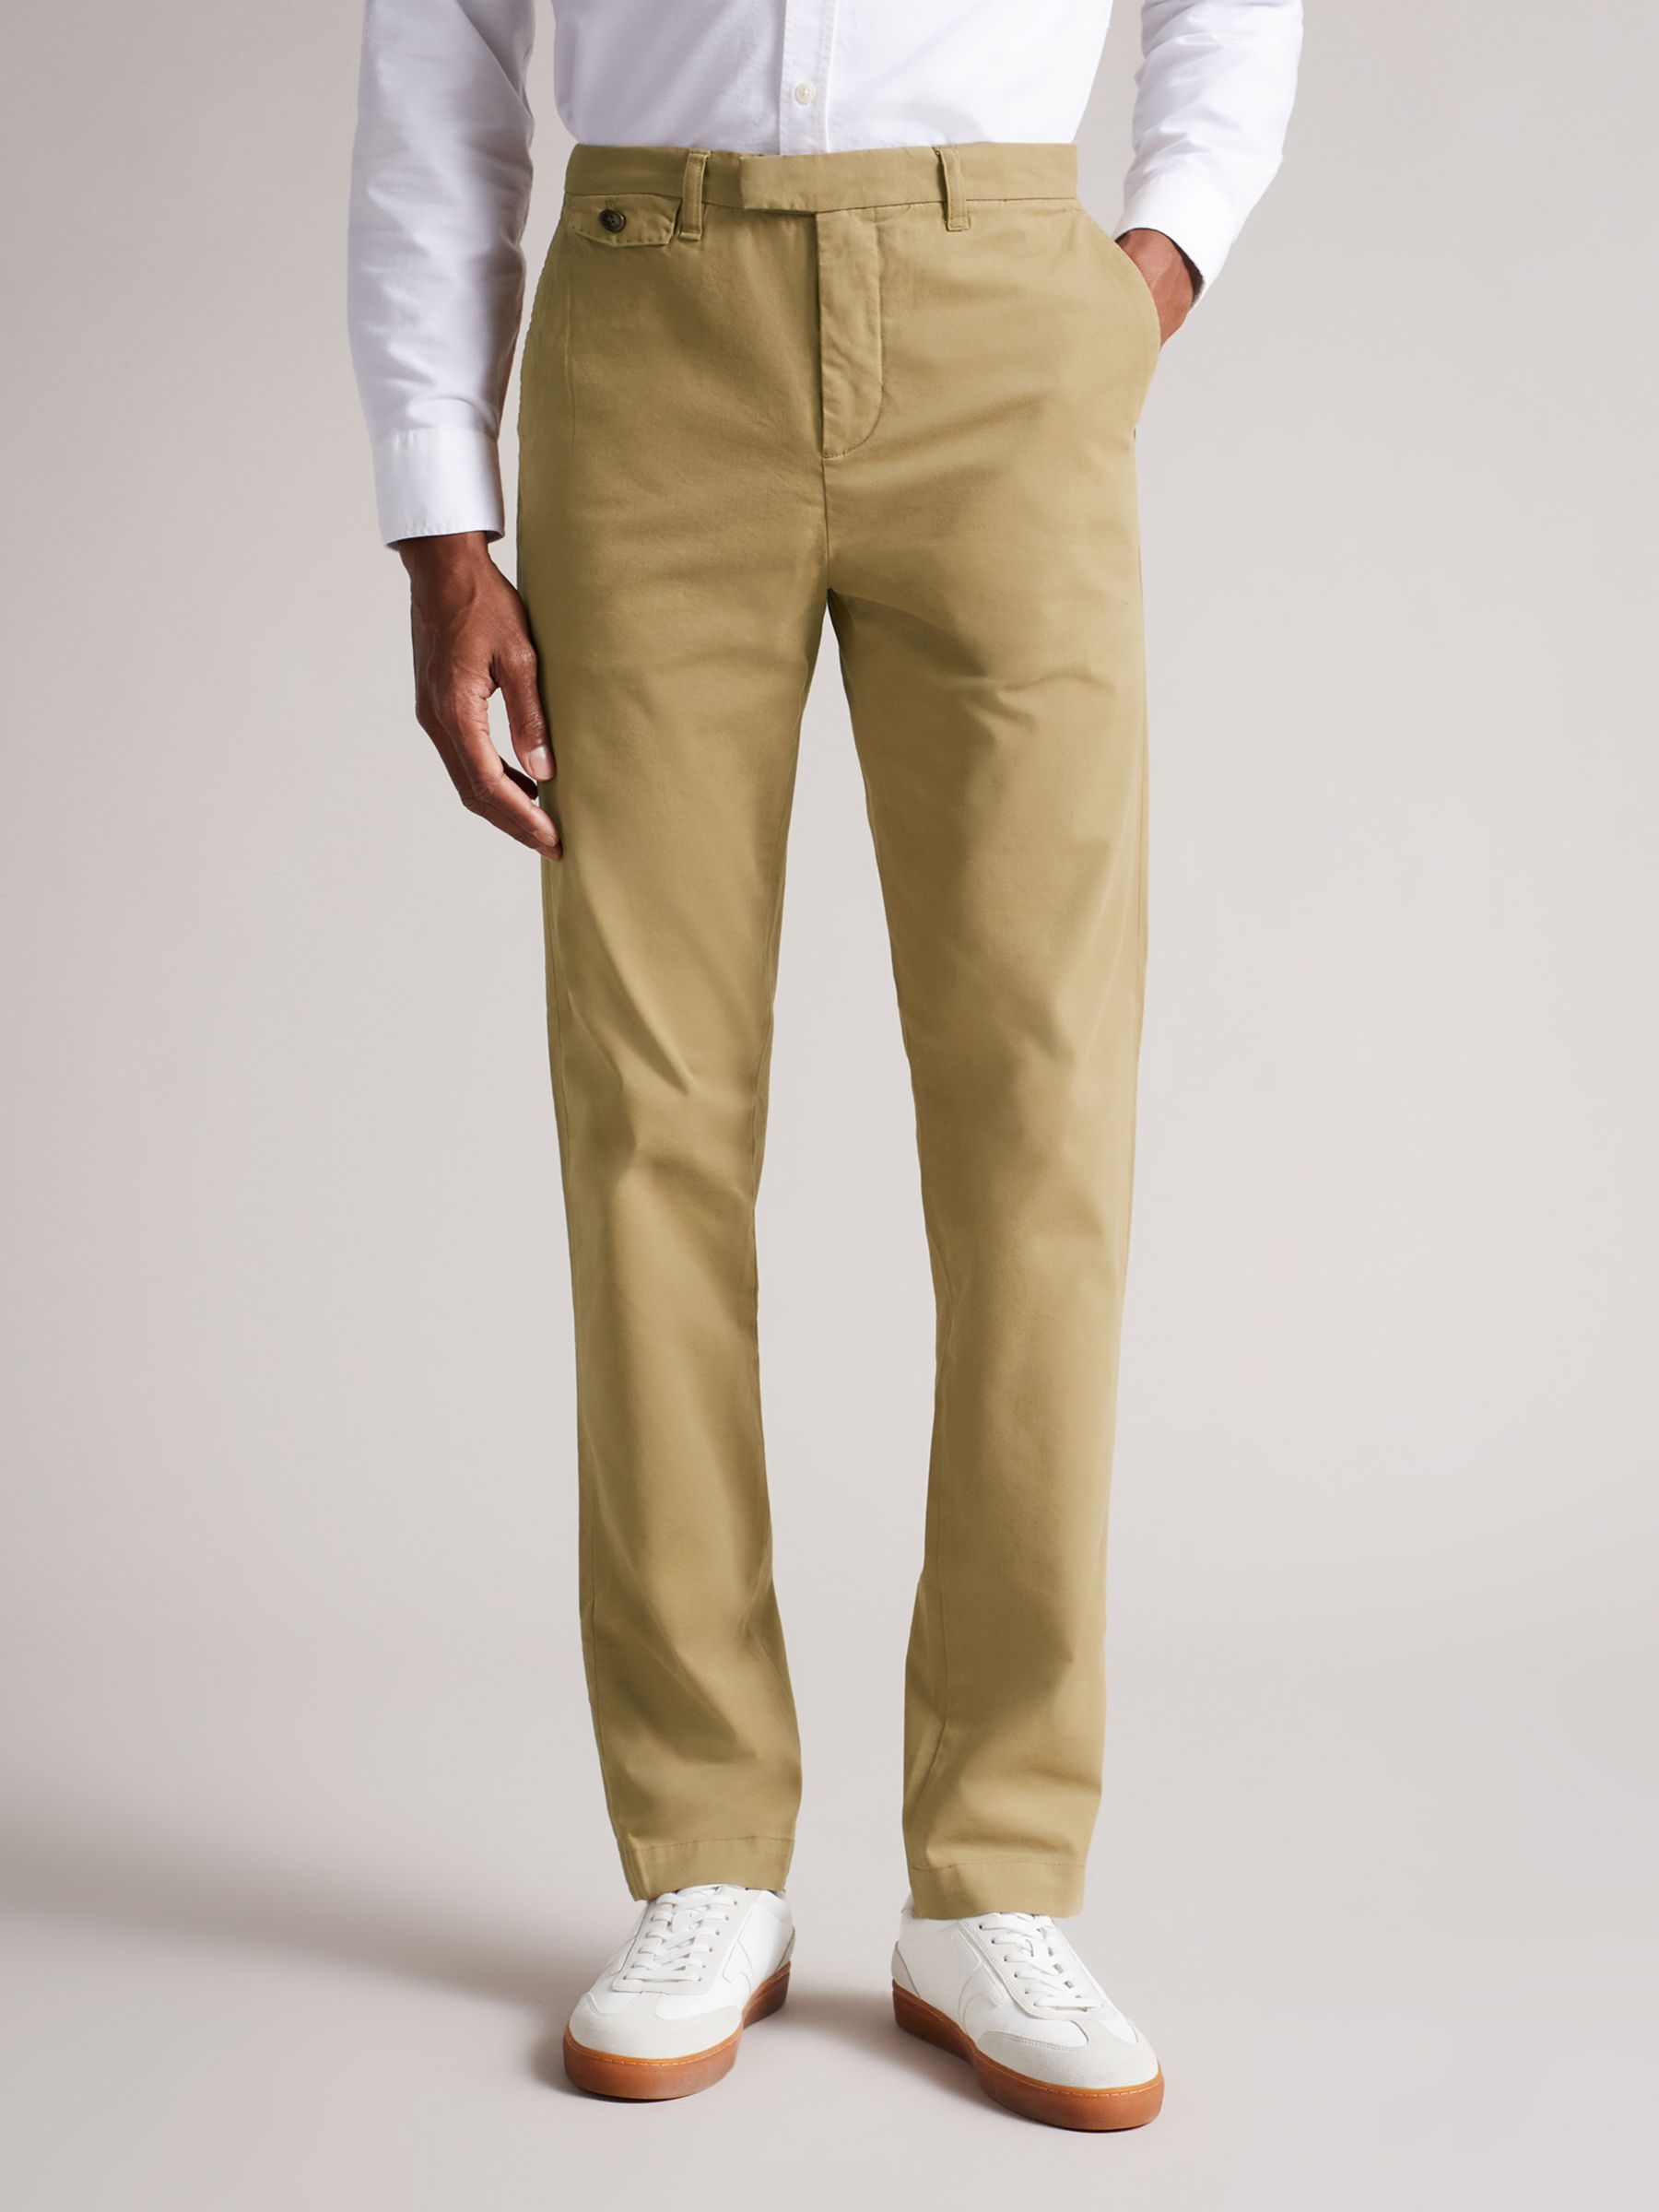 DOCKERS Levi's Mens Trousers Linen Cotton Pants Vintage Chinos Beige W34 L29